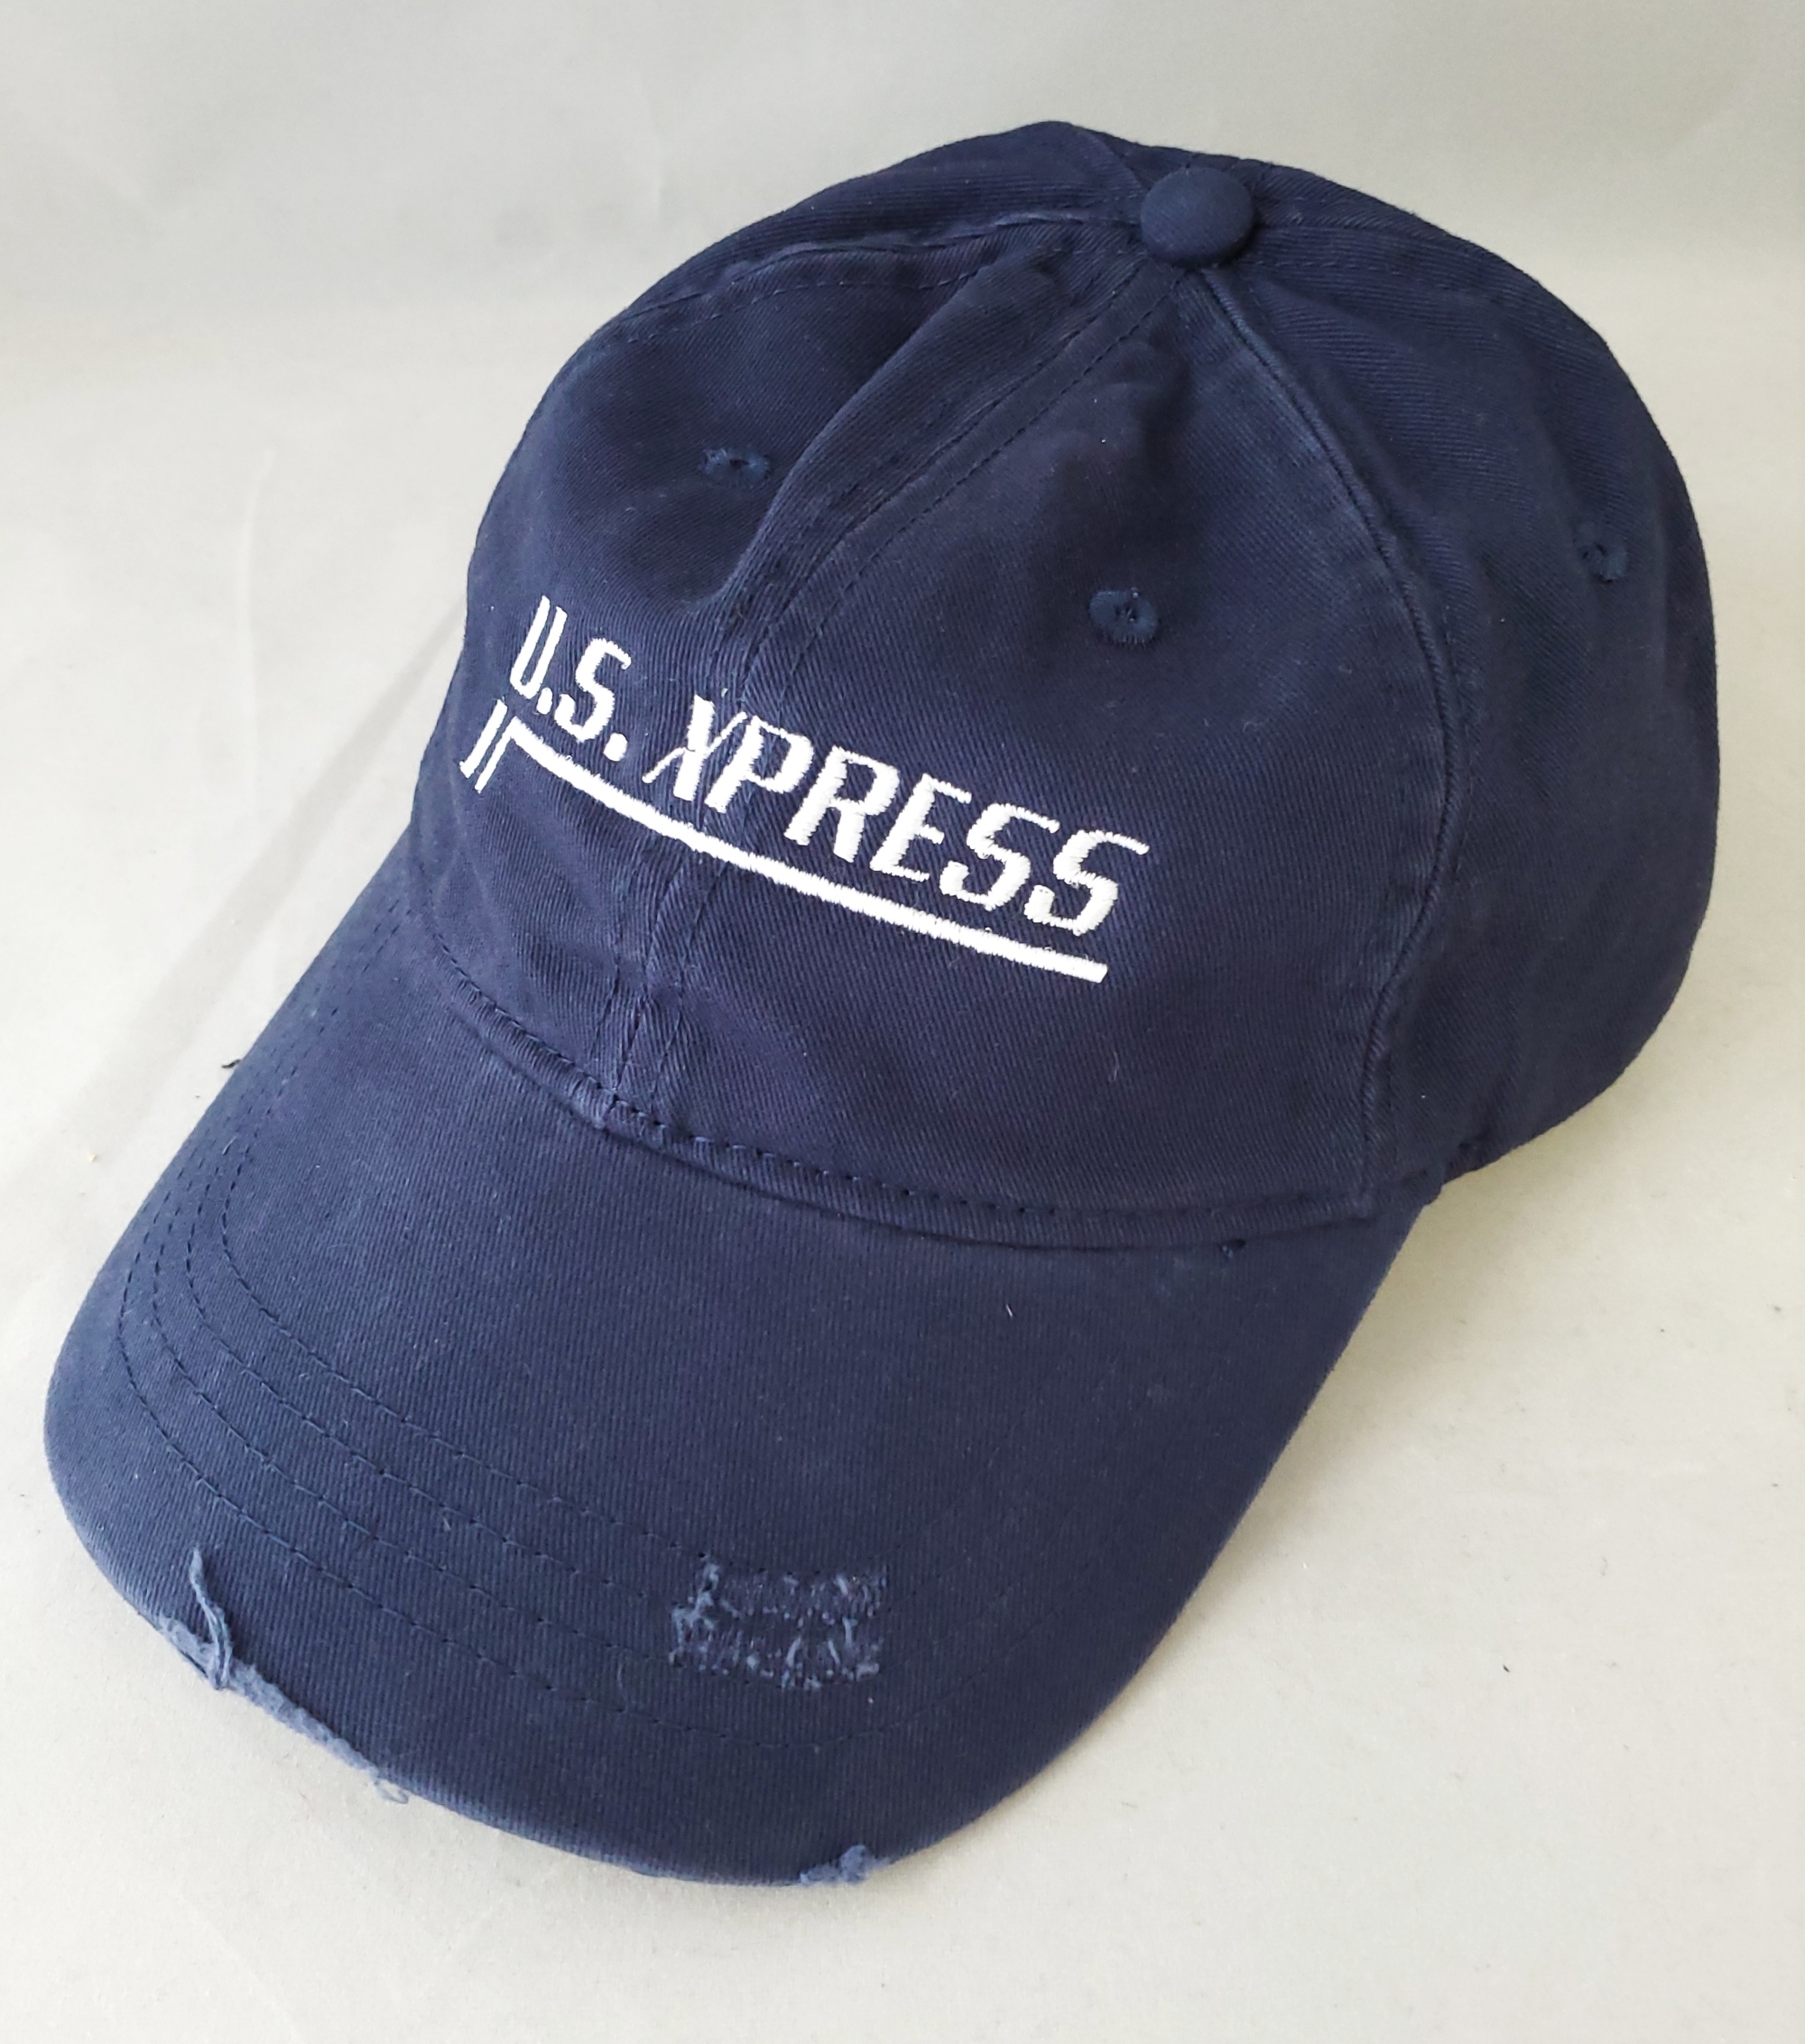 Distressed Cotton Cap - US Xpress Inc